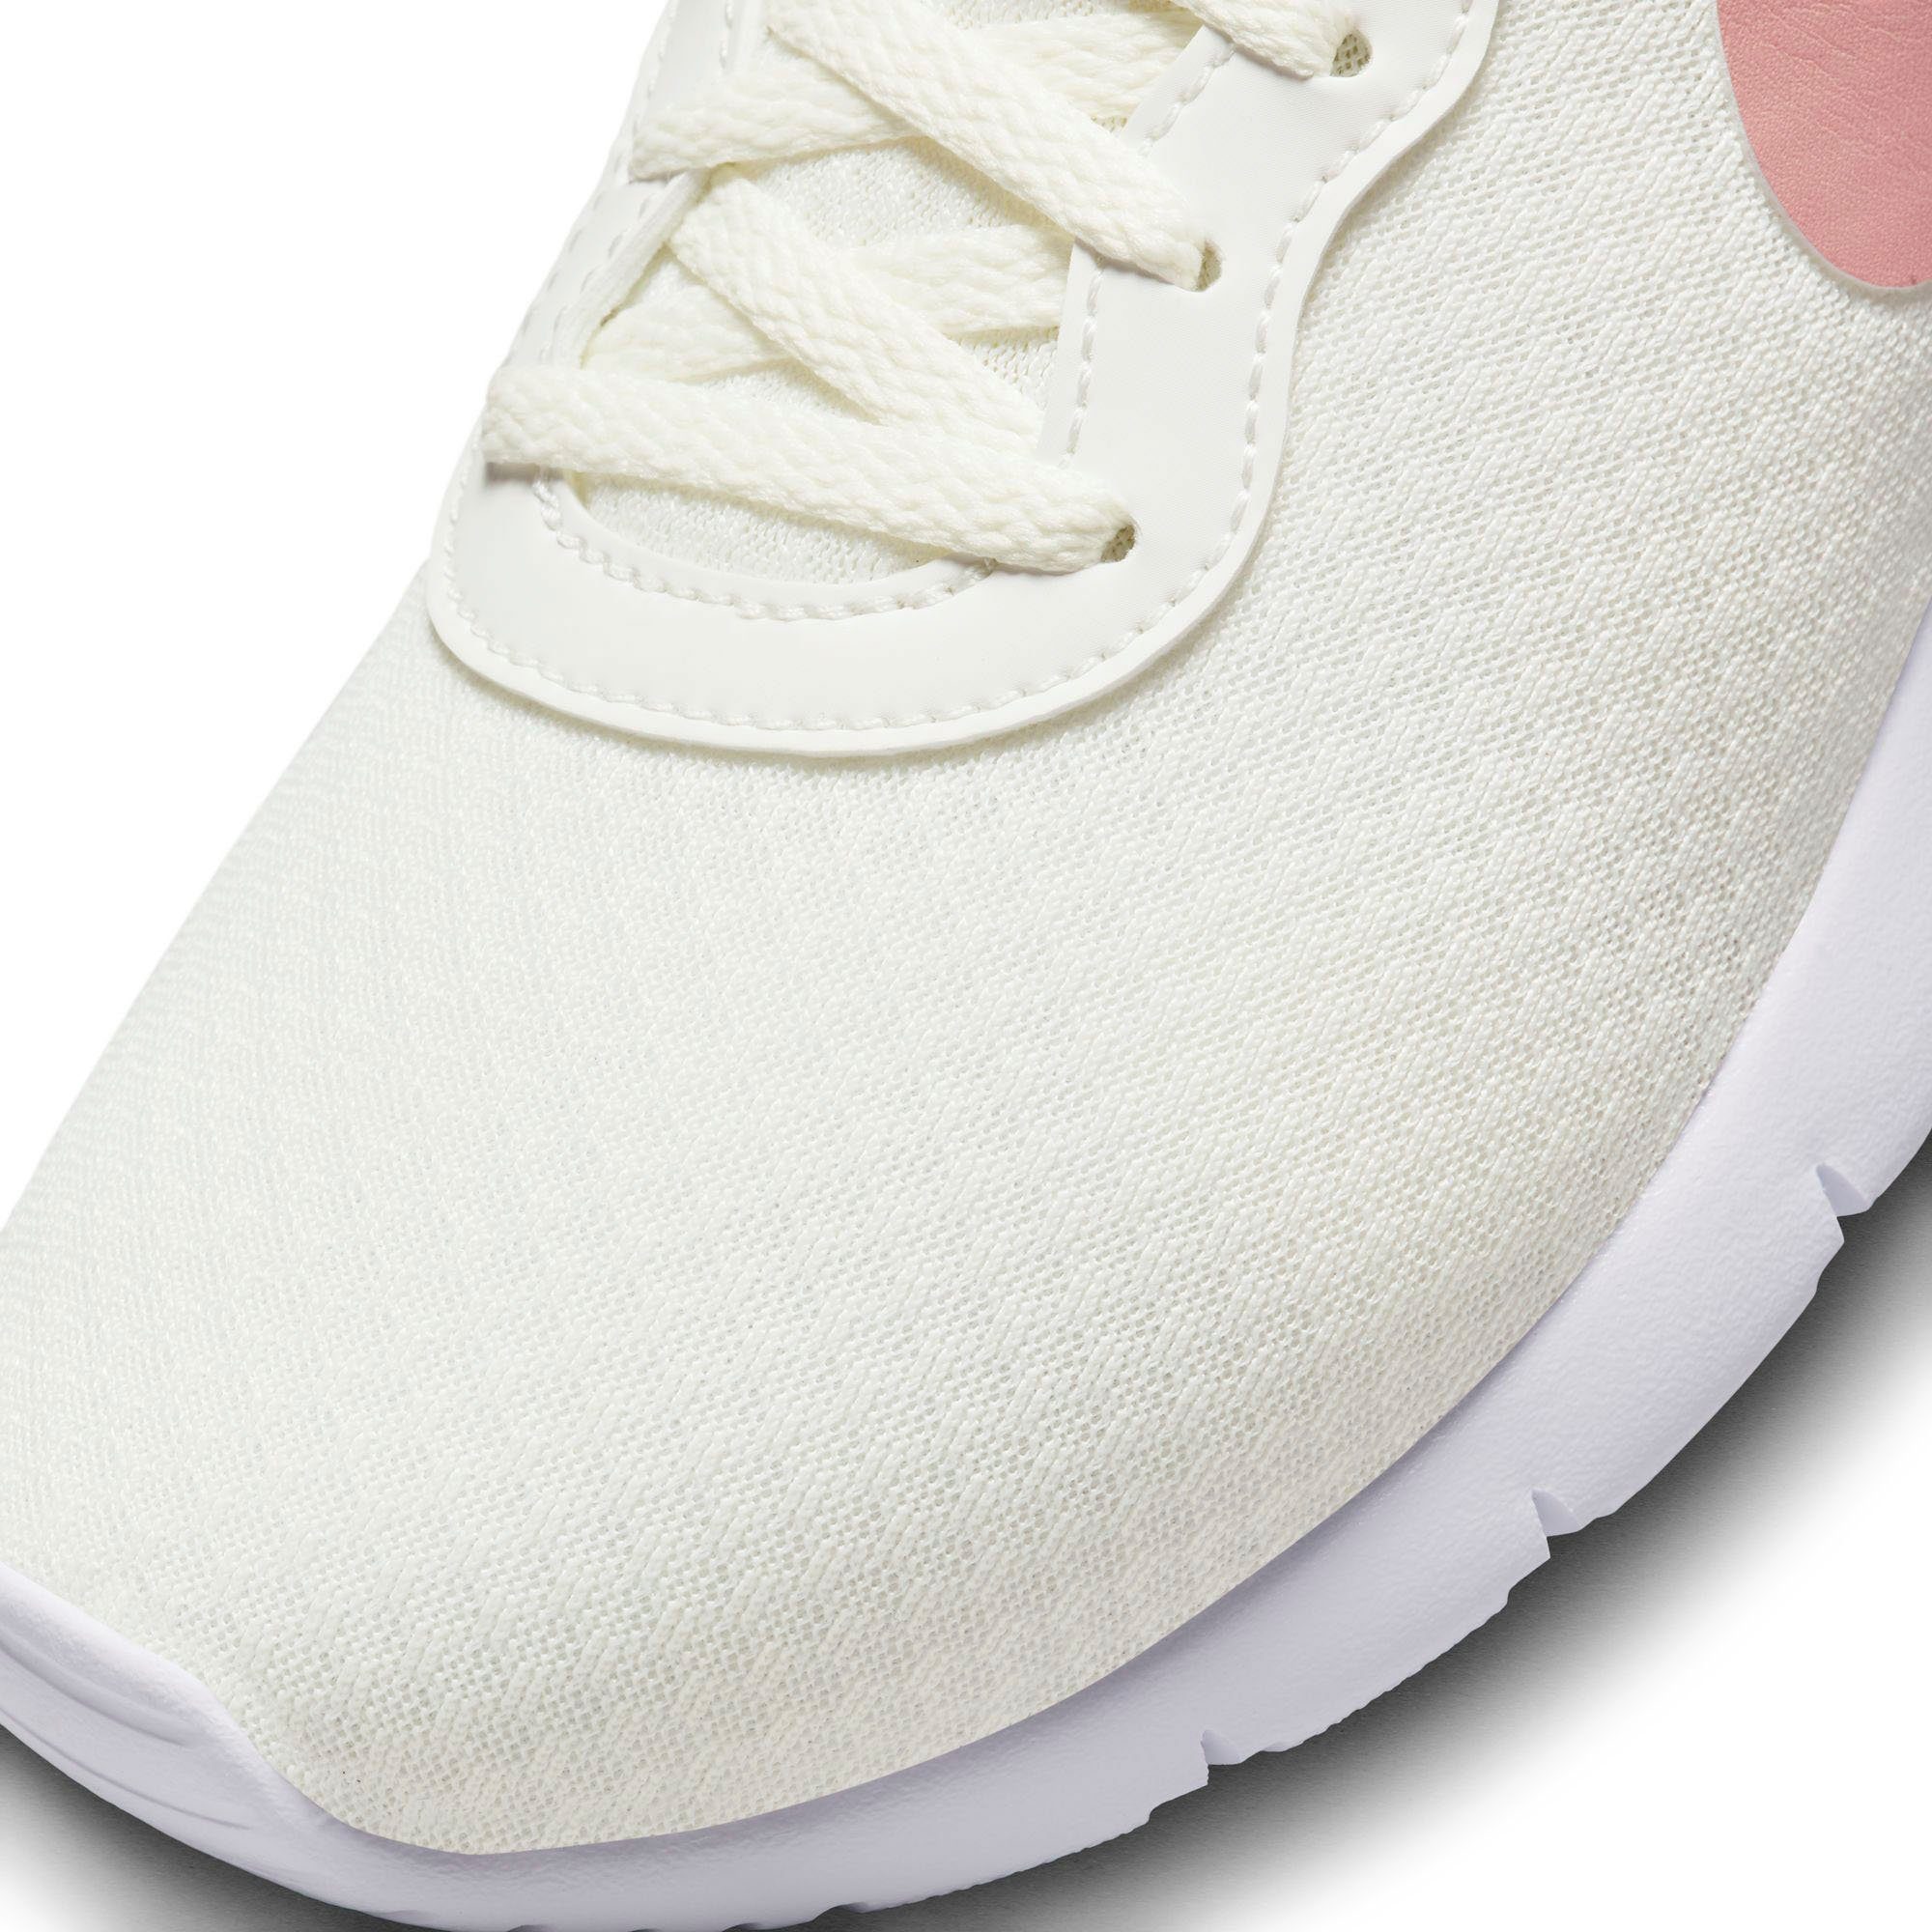 GO (GS) Sportswear summit white TANJUN Sneaker Nike